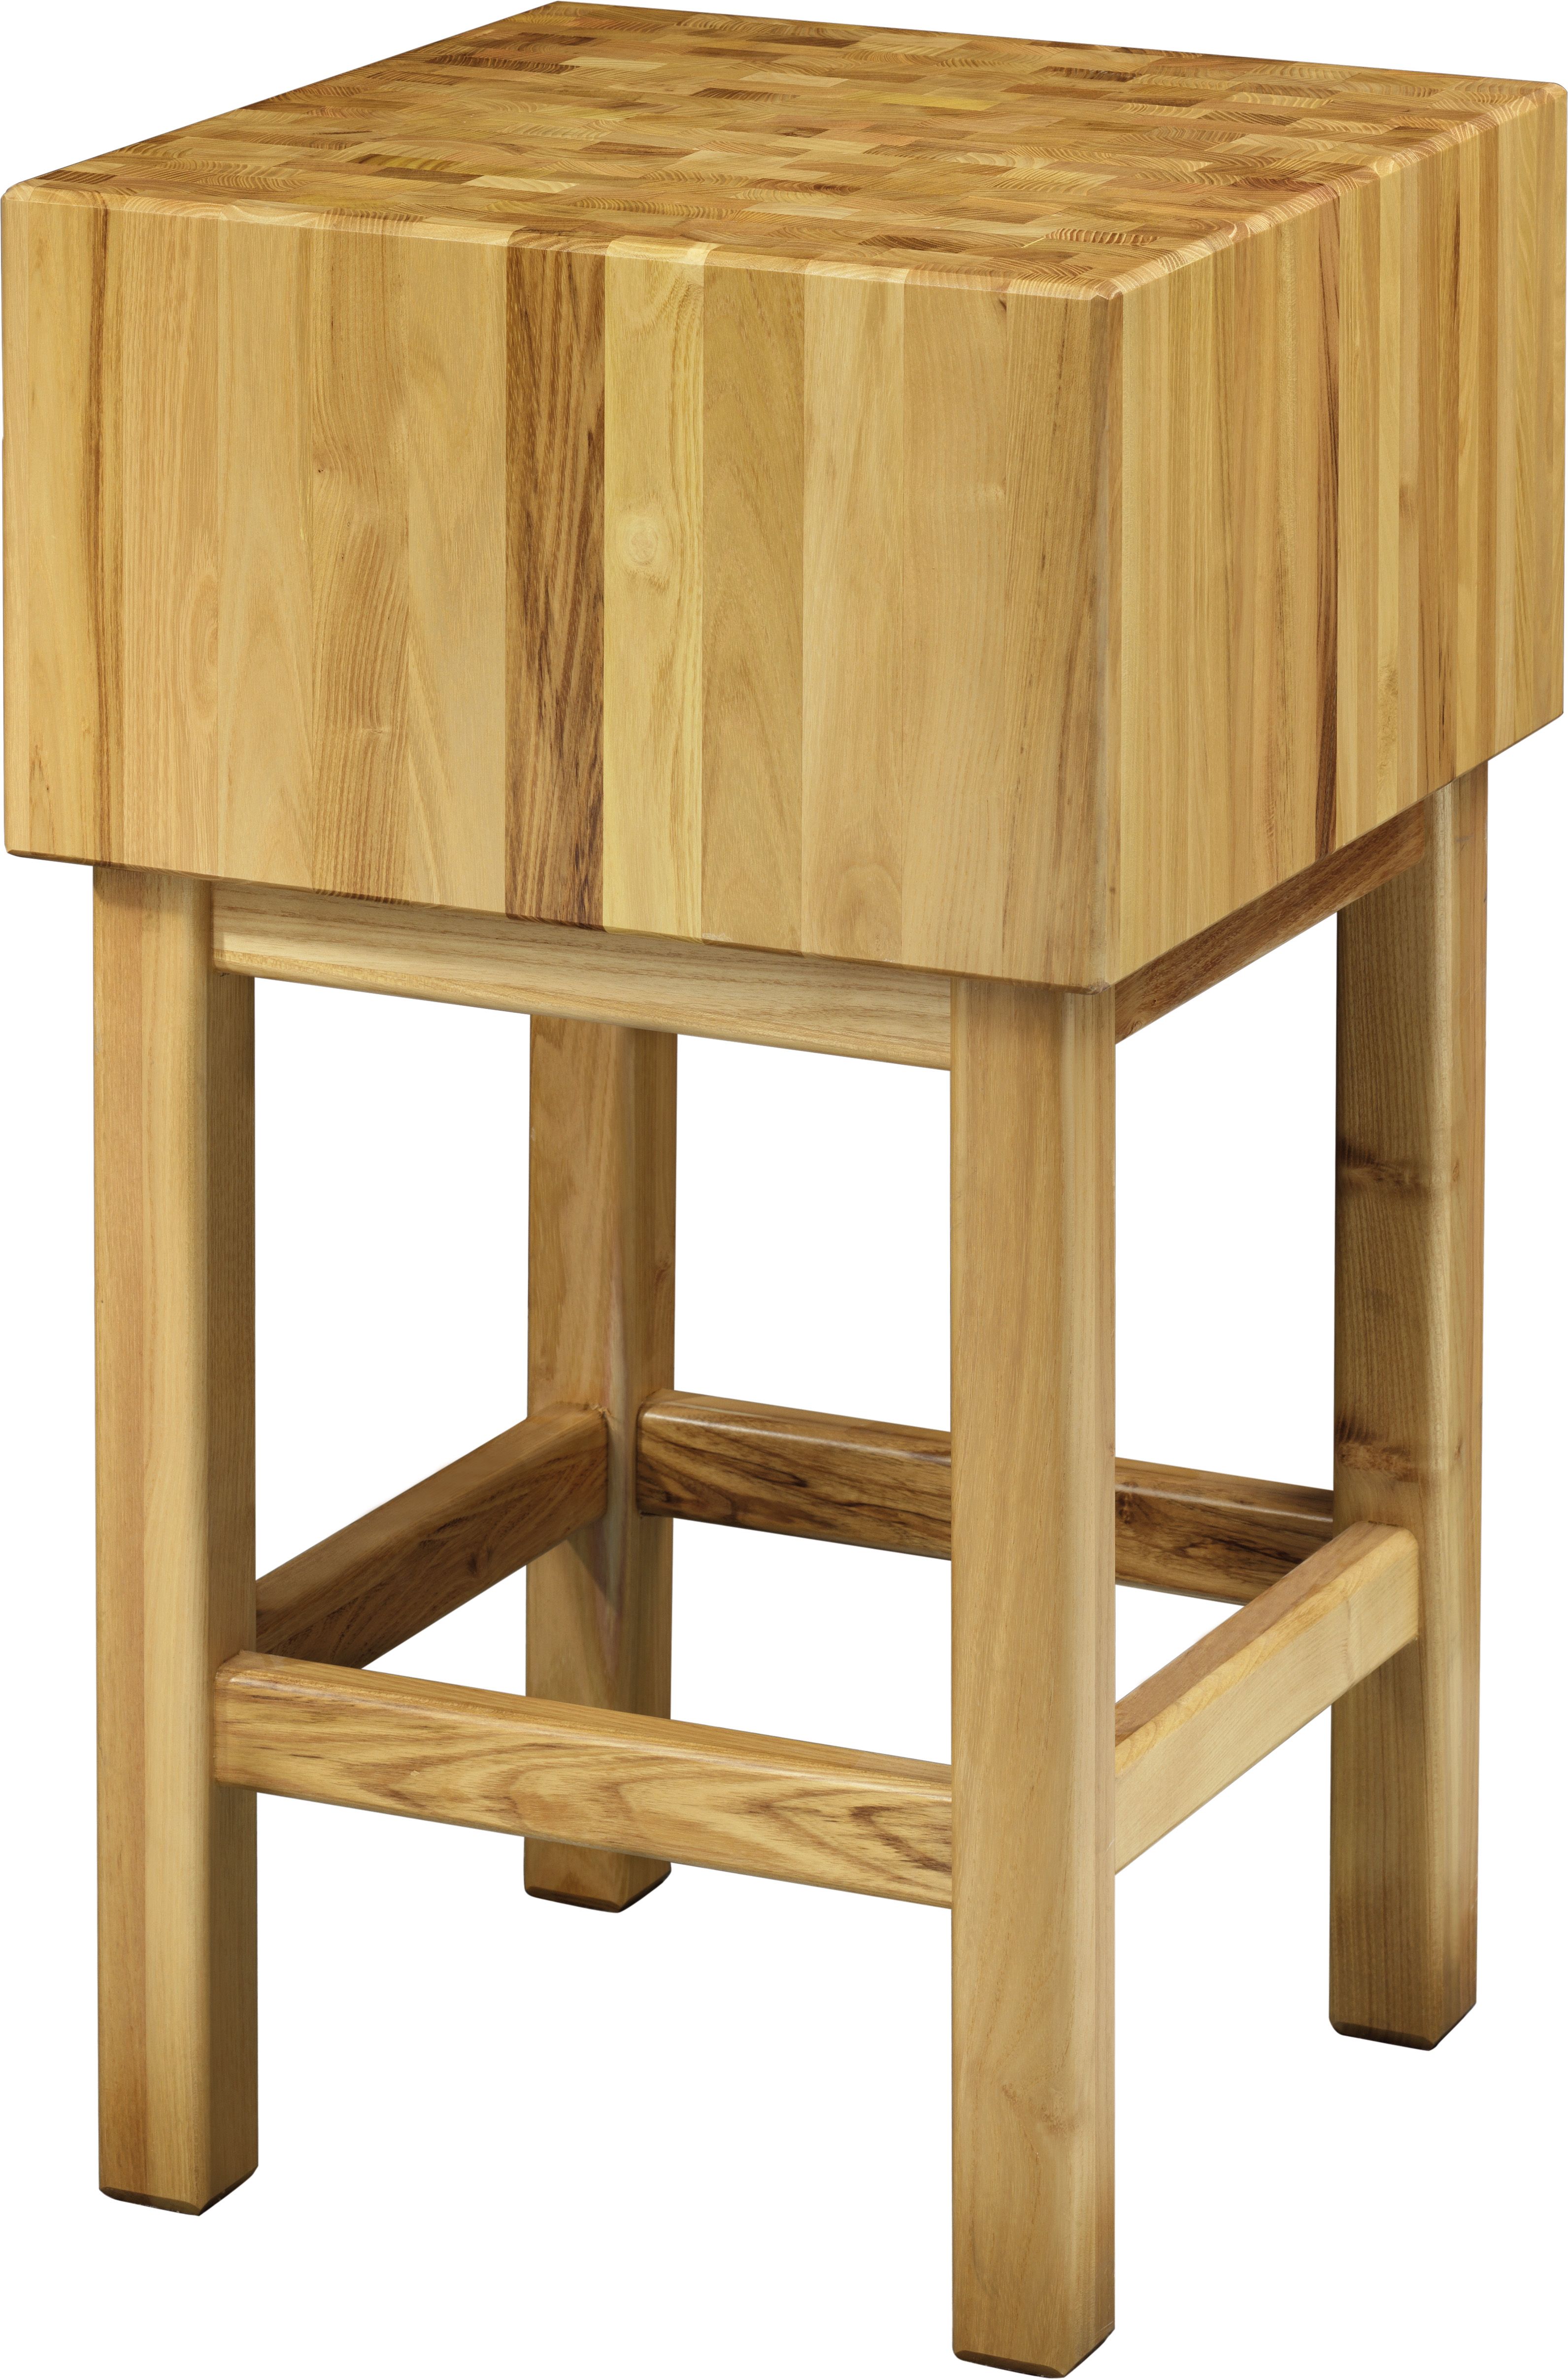 Hackblock – Holz – Stärke 25 cm – Untergestell Masse 40 x 40 x 90 cm